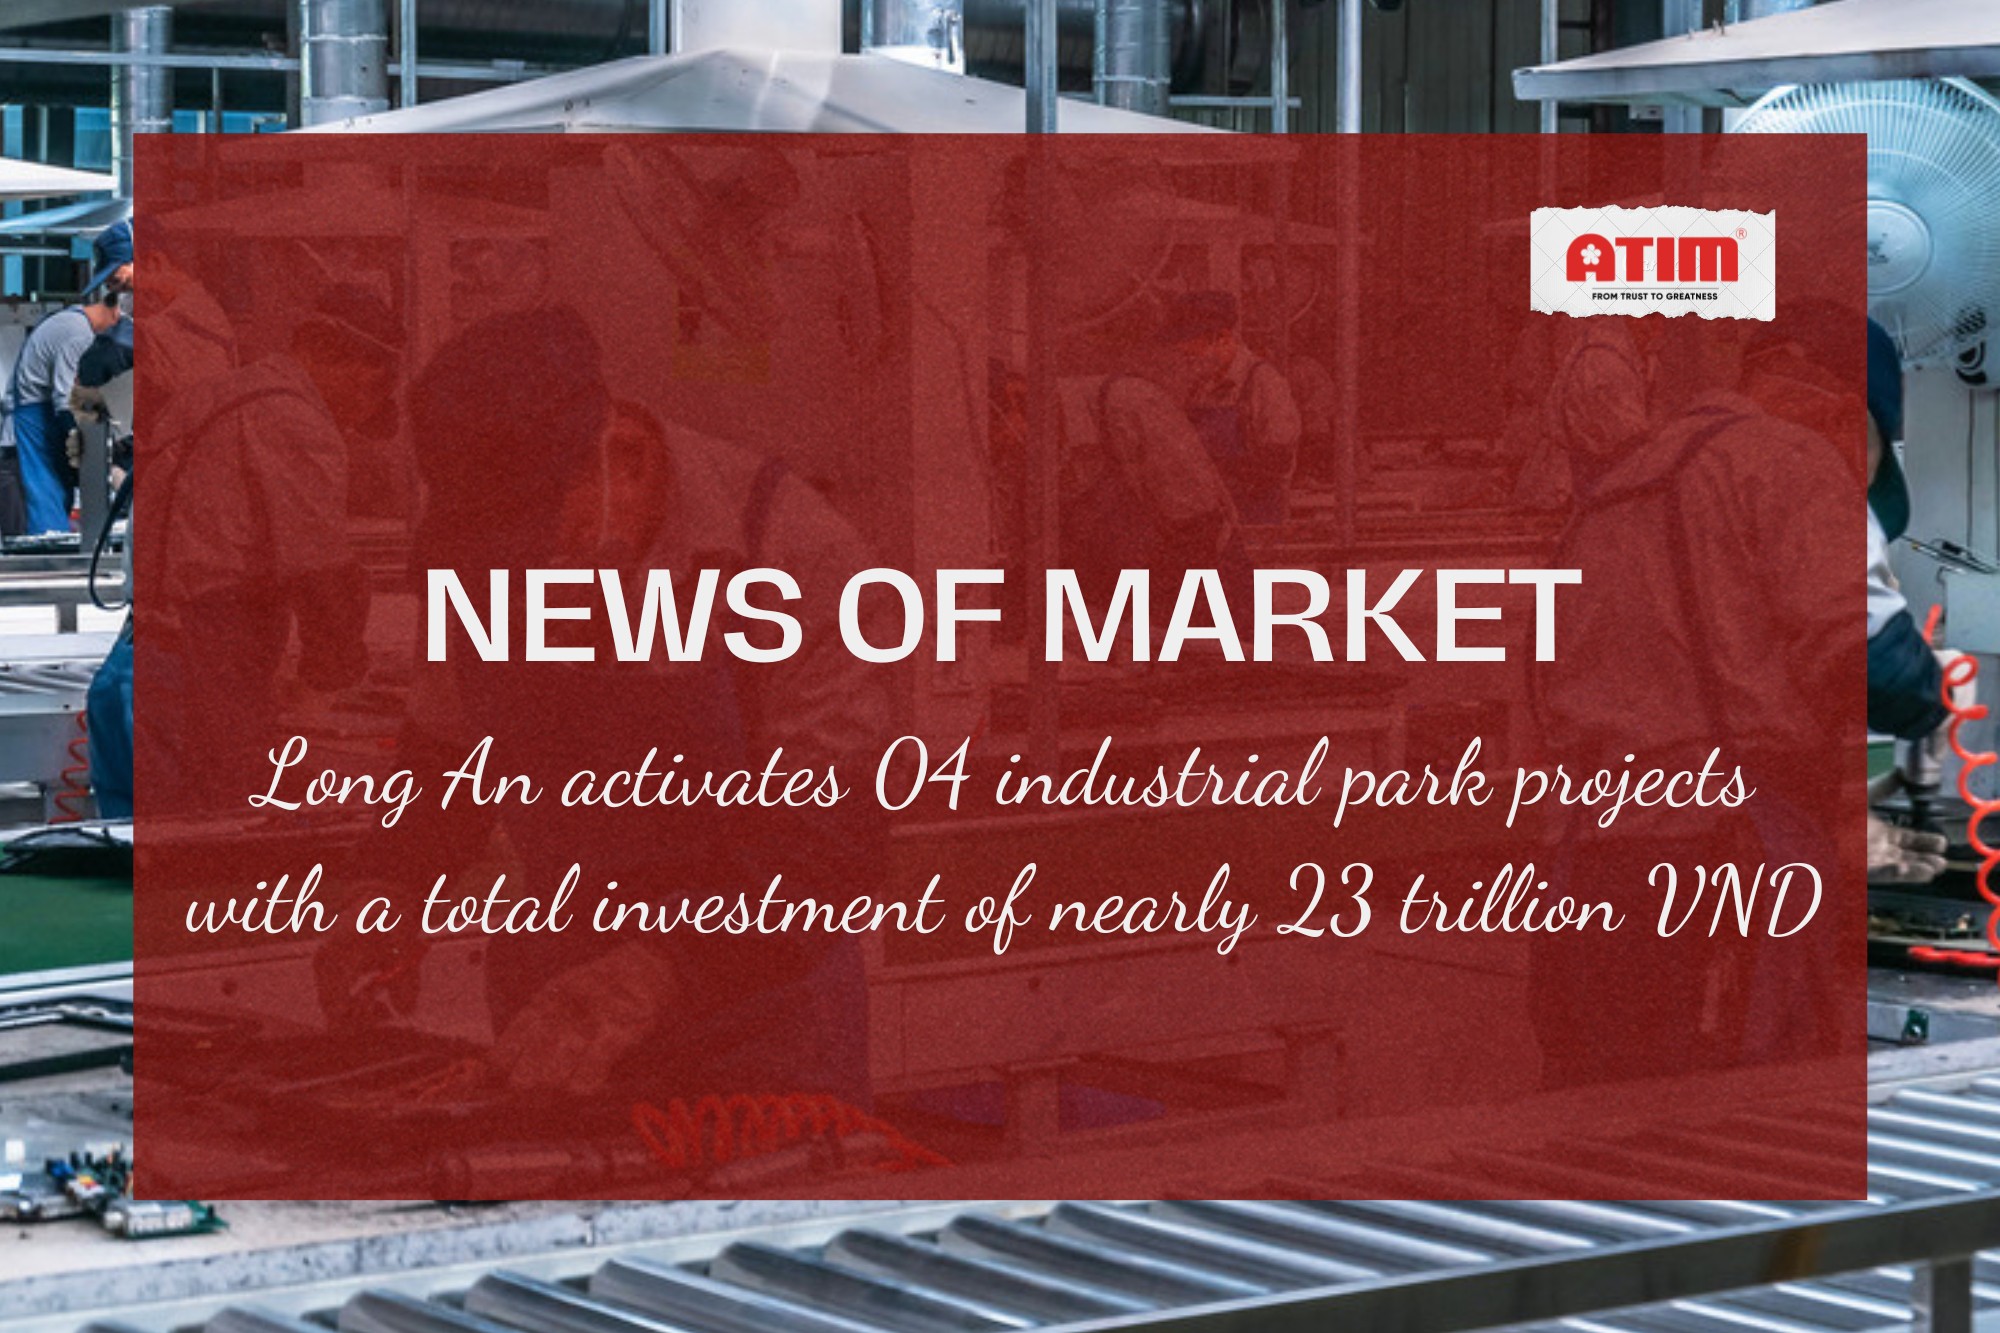 Long An kích hoạt 04 dự án khu công nghiệp với tổng vốn đầu tư gần 23.000 tỷ đồng.